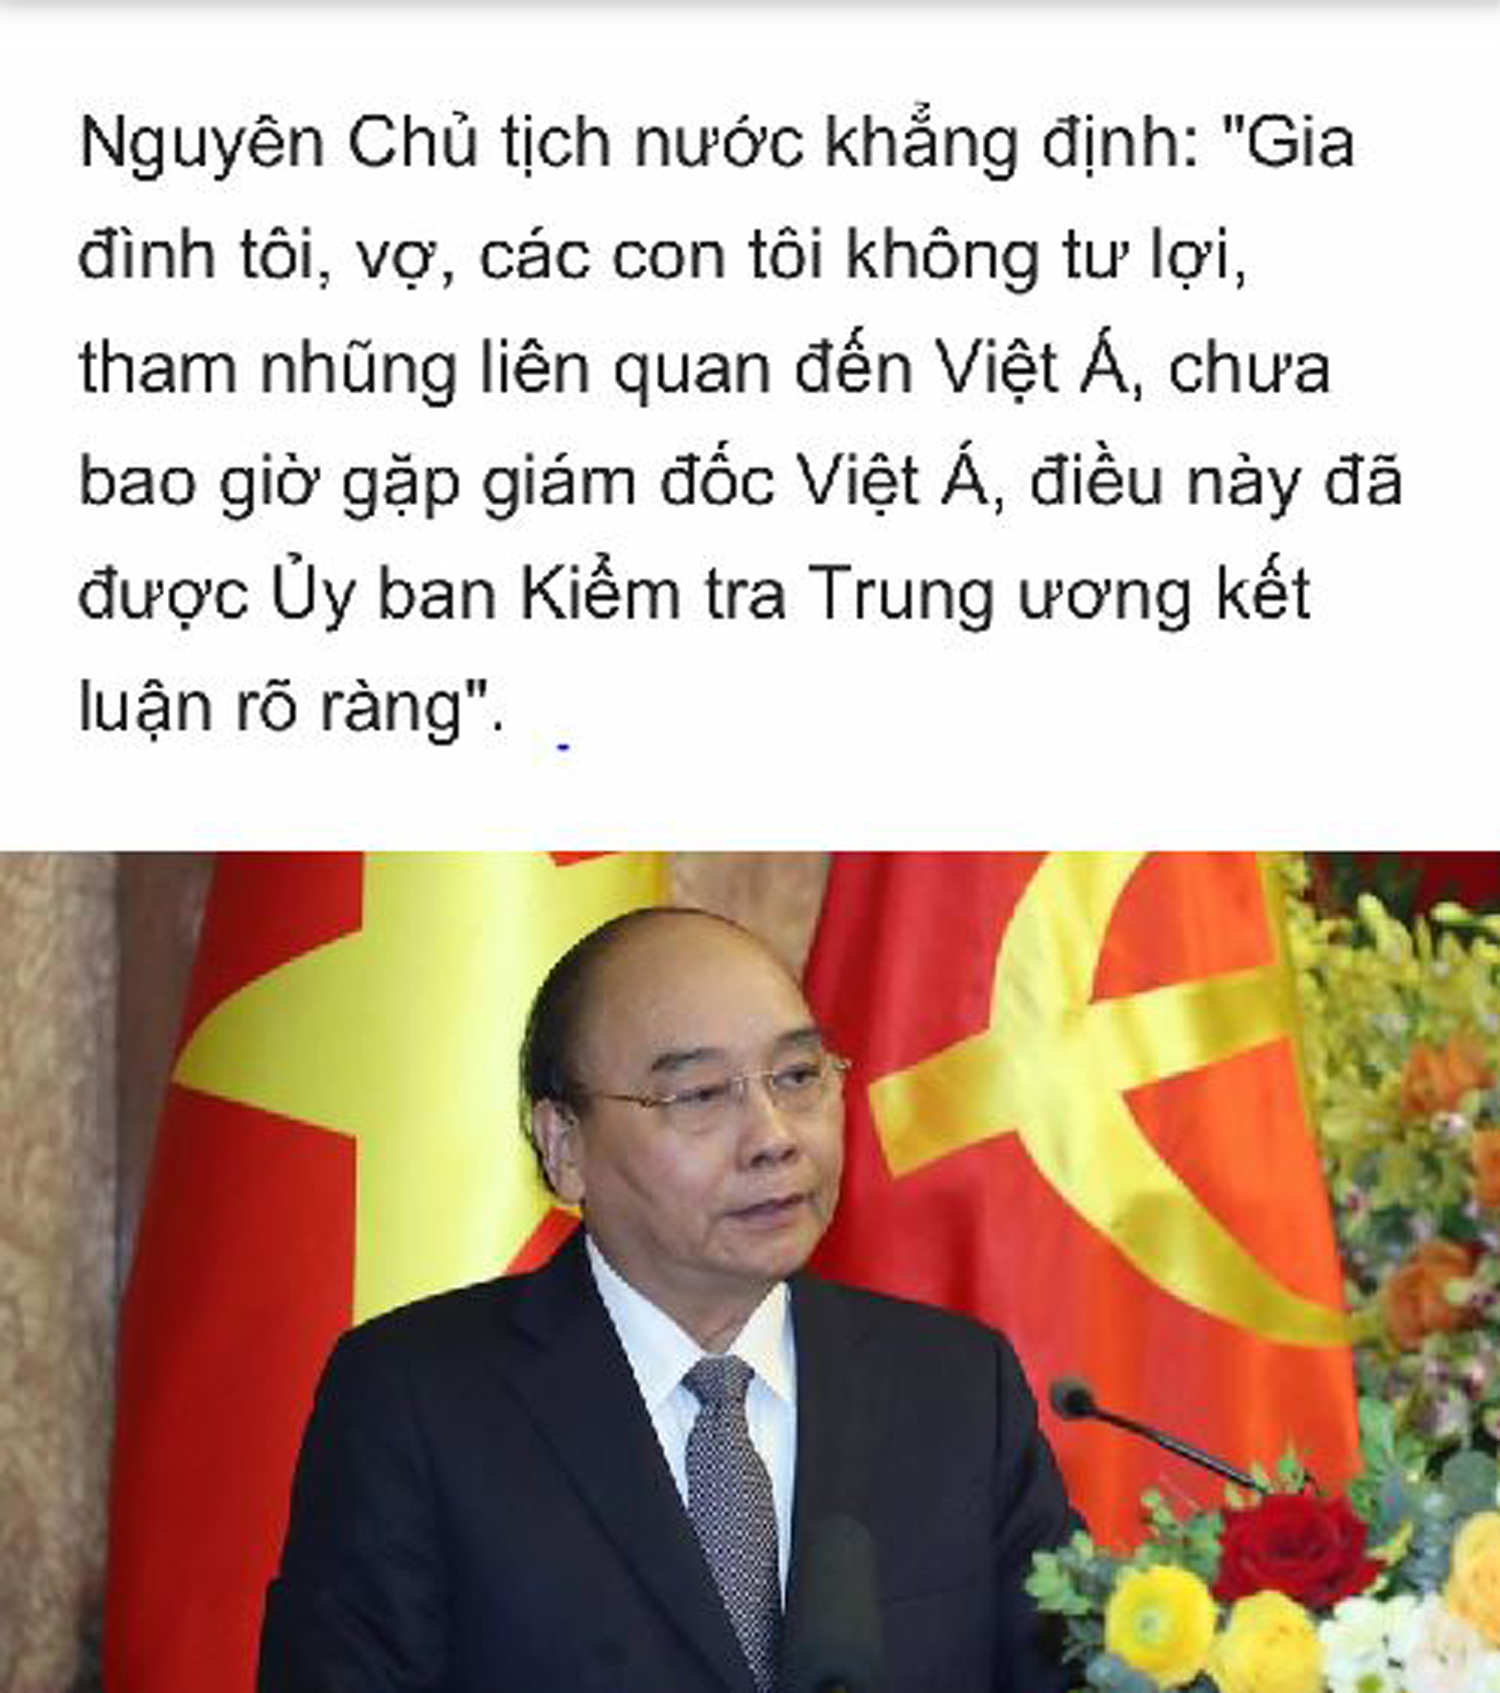 Bản tin của VnExpress đăng lời phủ nhận của ông Nguyễn Xuân Phúc cho vợ con liên quan đến Việt Á hai ngày trước nhưng nay đã bị xóa. Ảnh: Người Việt (chụp qua màn hình)